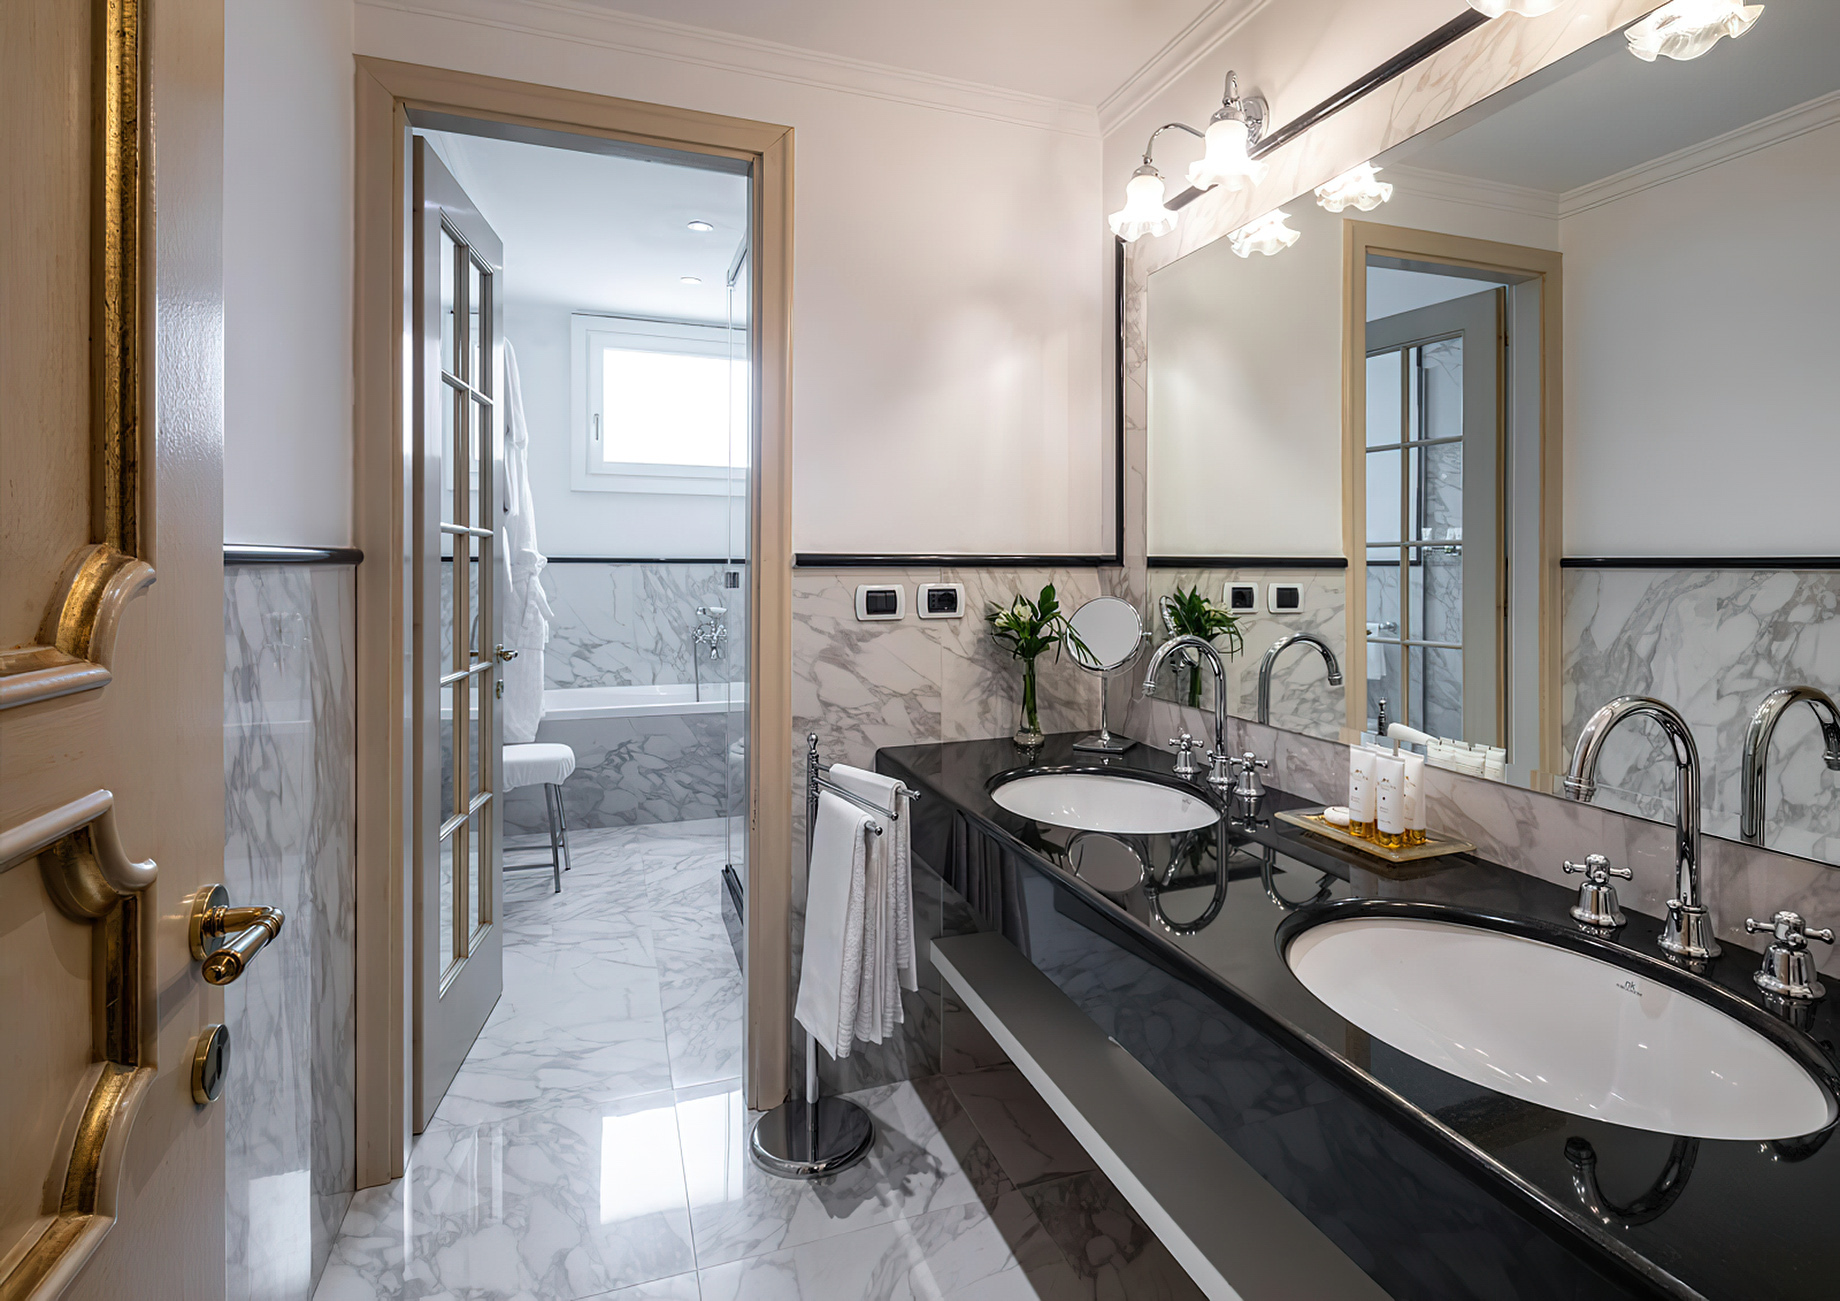 Baglioni Hotel Luna, Venezia – Venice, Italy – Sansovino Family Lagoon View Suite Bathroom